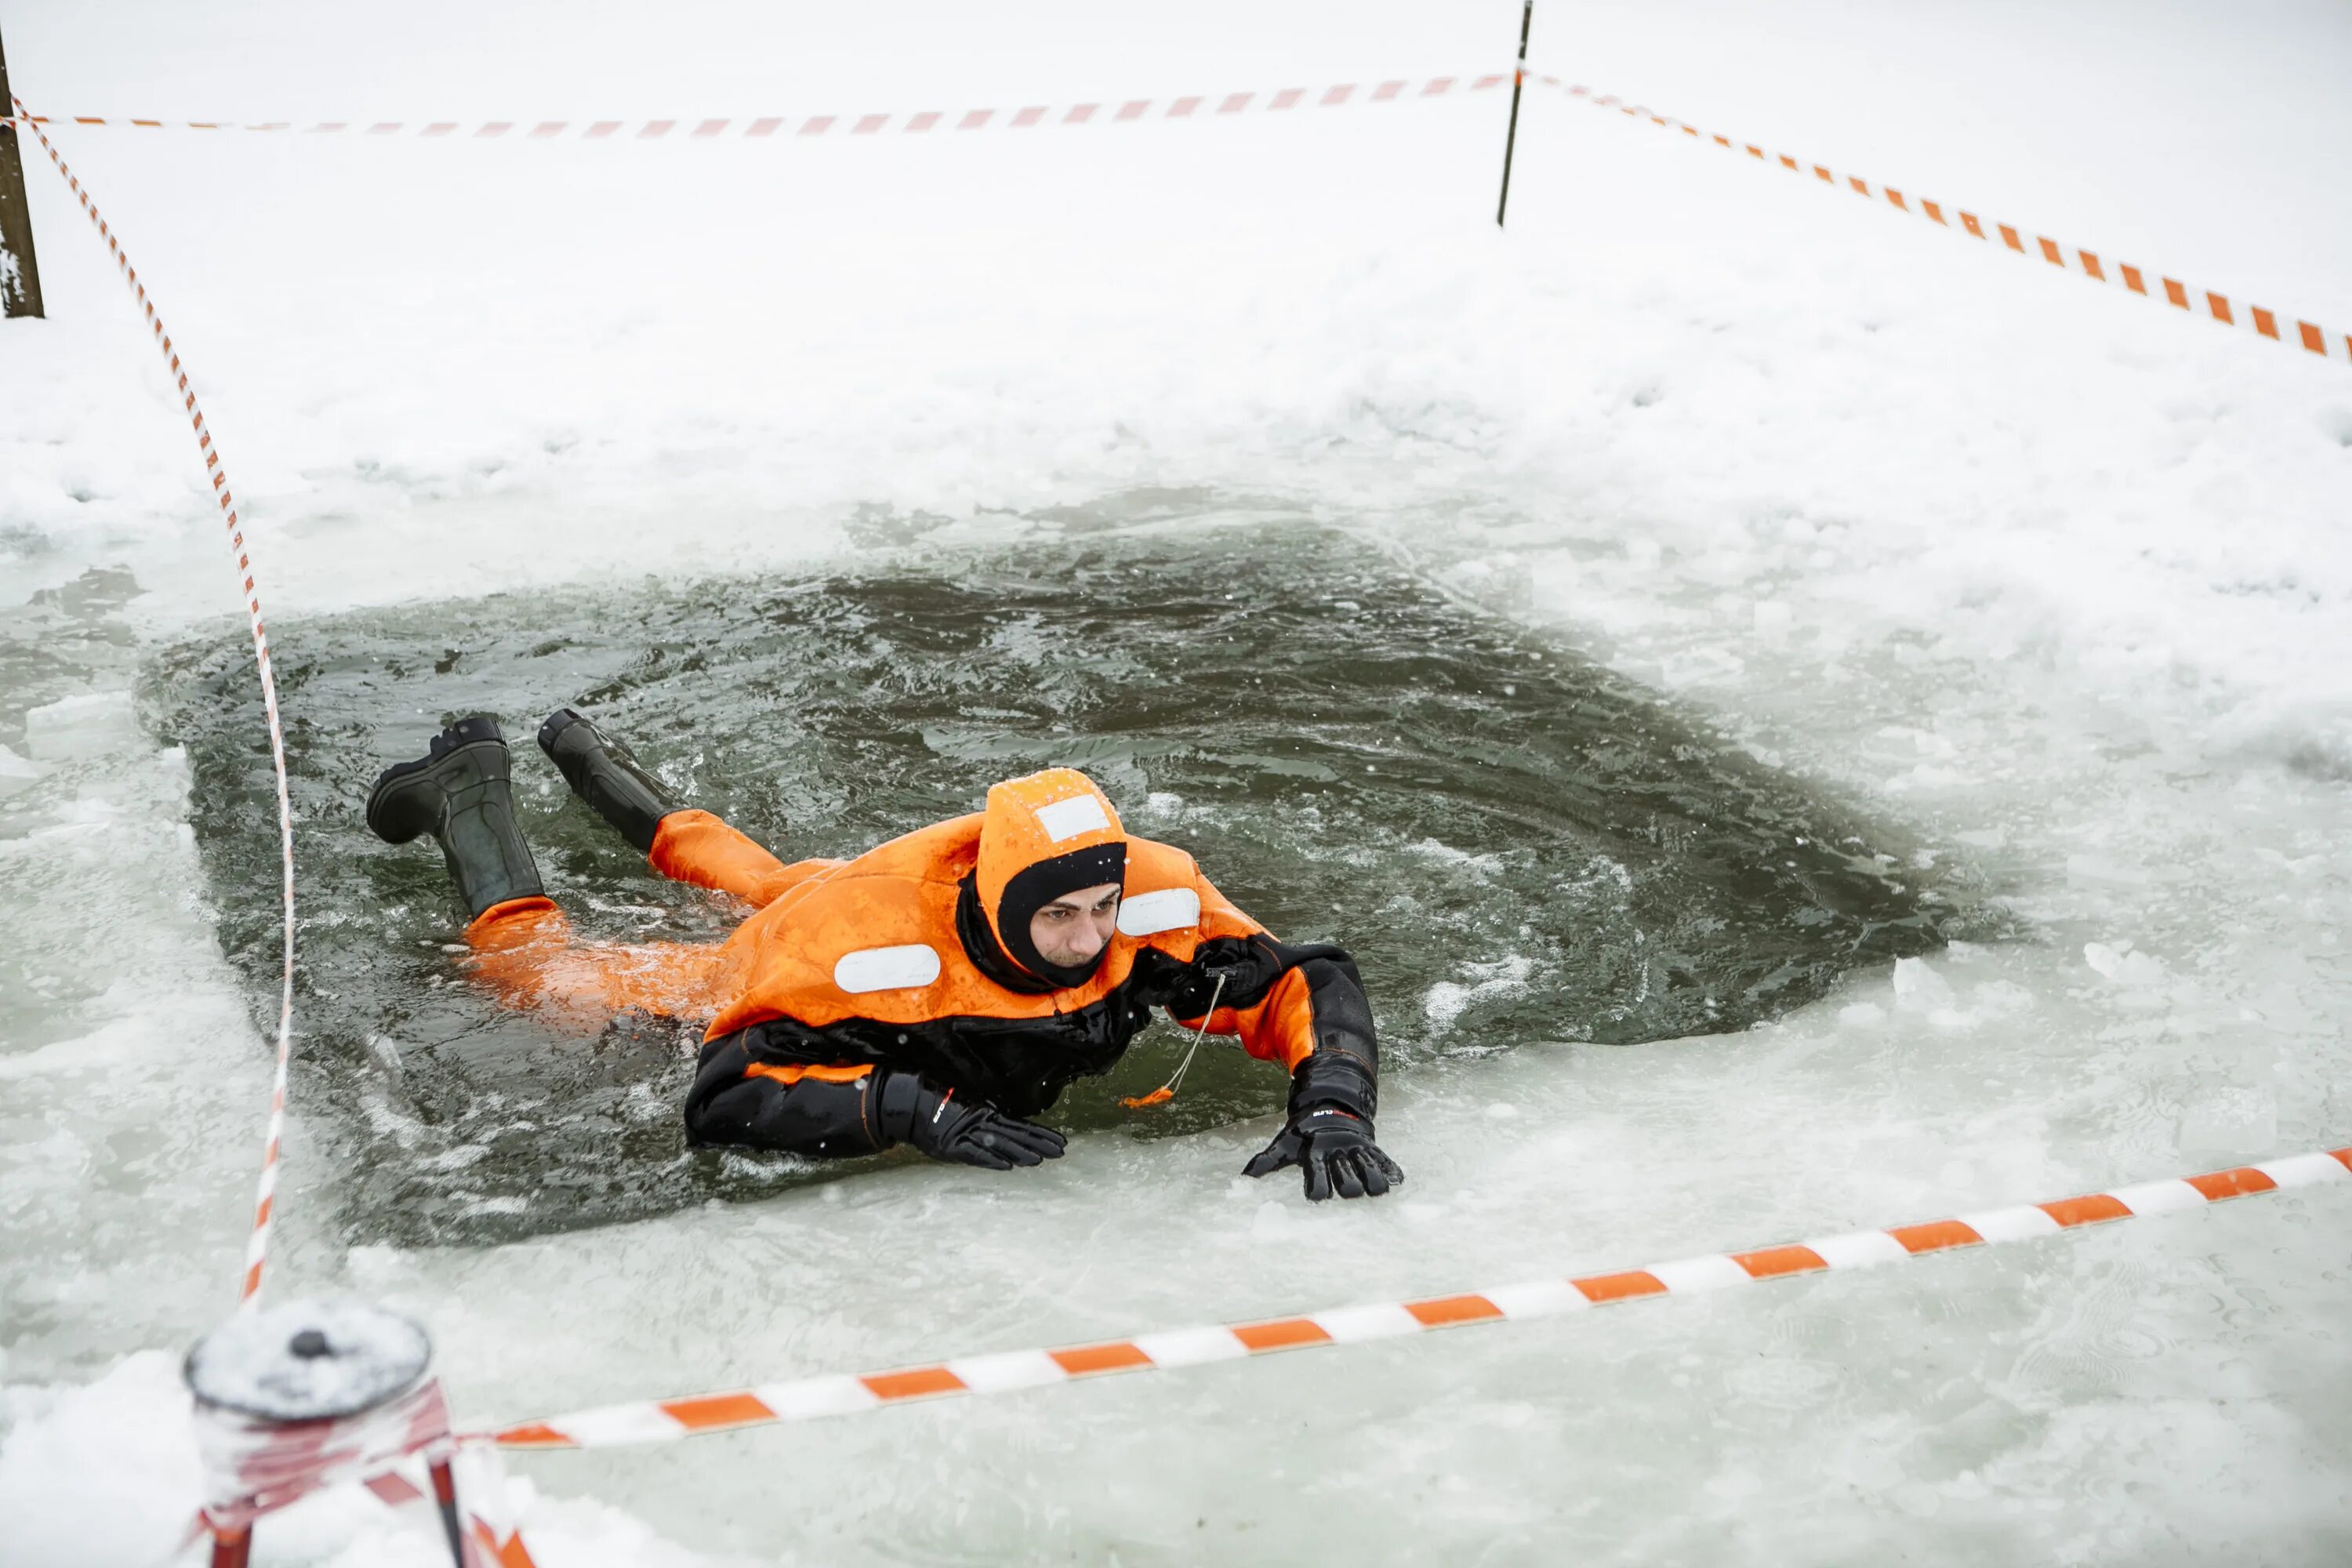 Видео спасения людей. Спасение человека провалившегося под лед. Человек провалился под лед. МЧС России спасает человека на льду. Оказание помощи провалившемуся под лед.